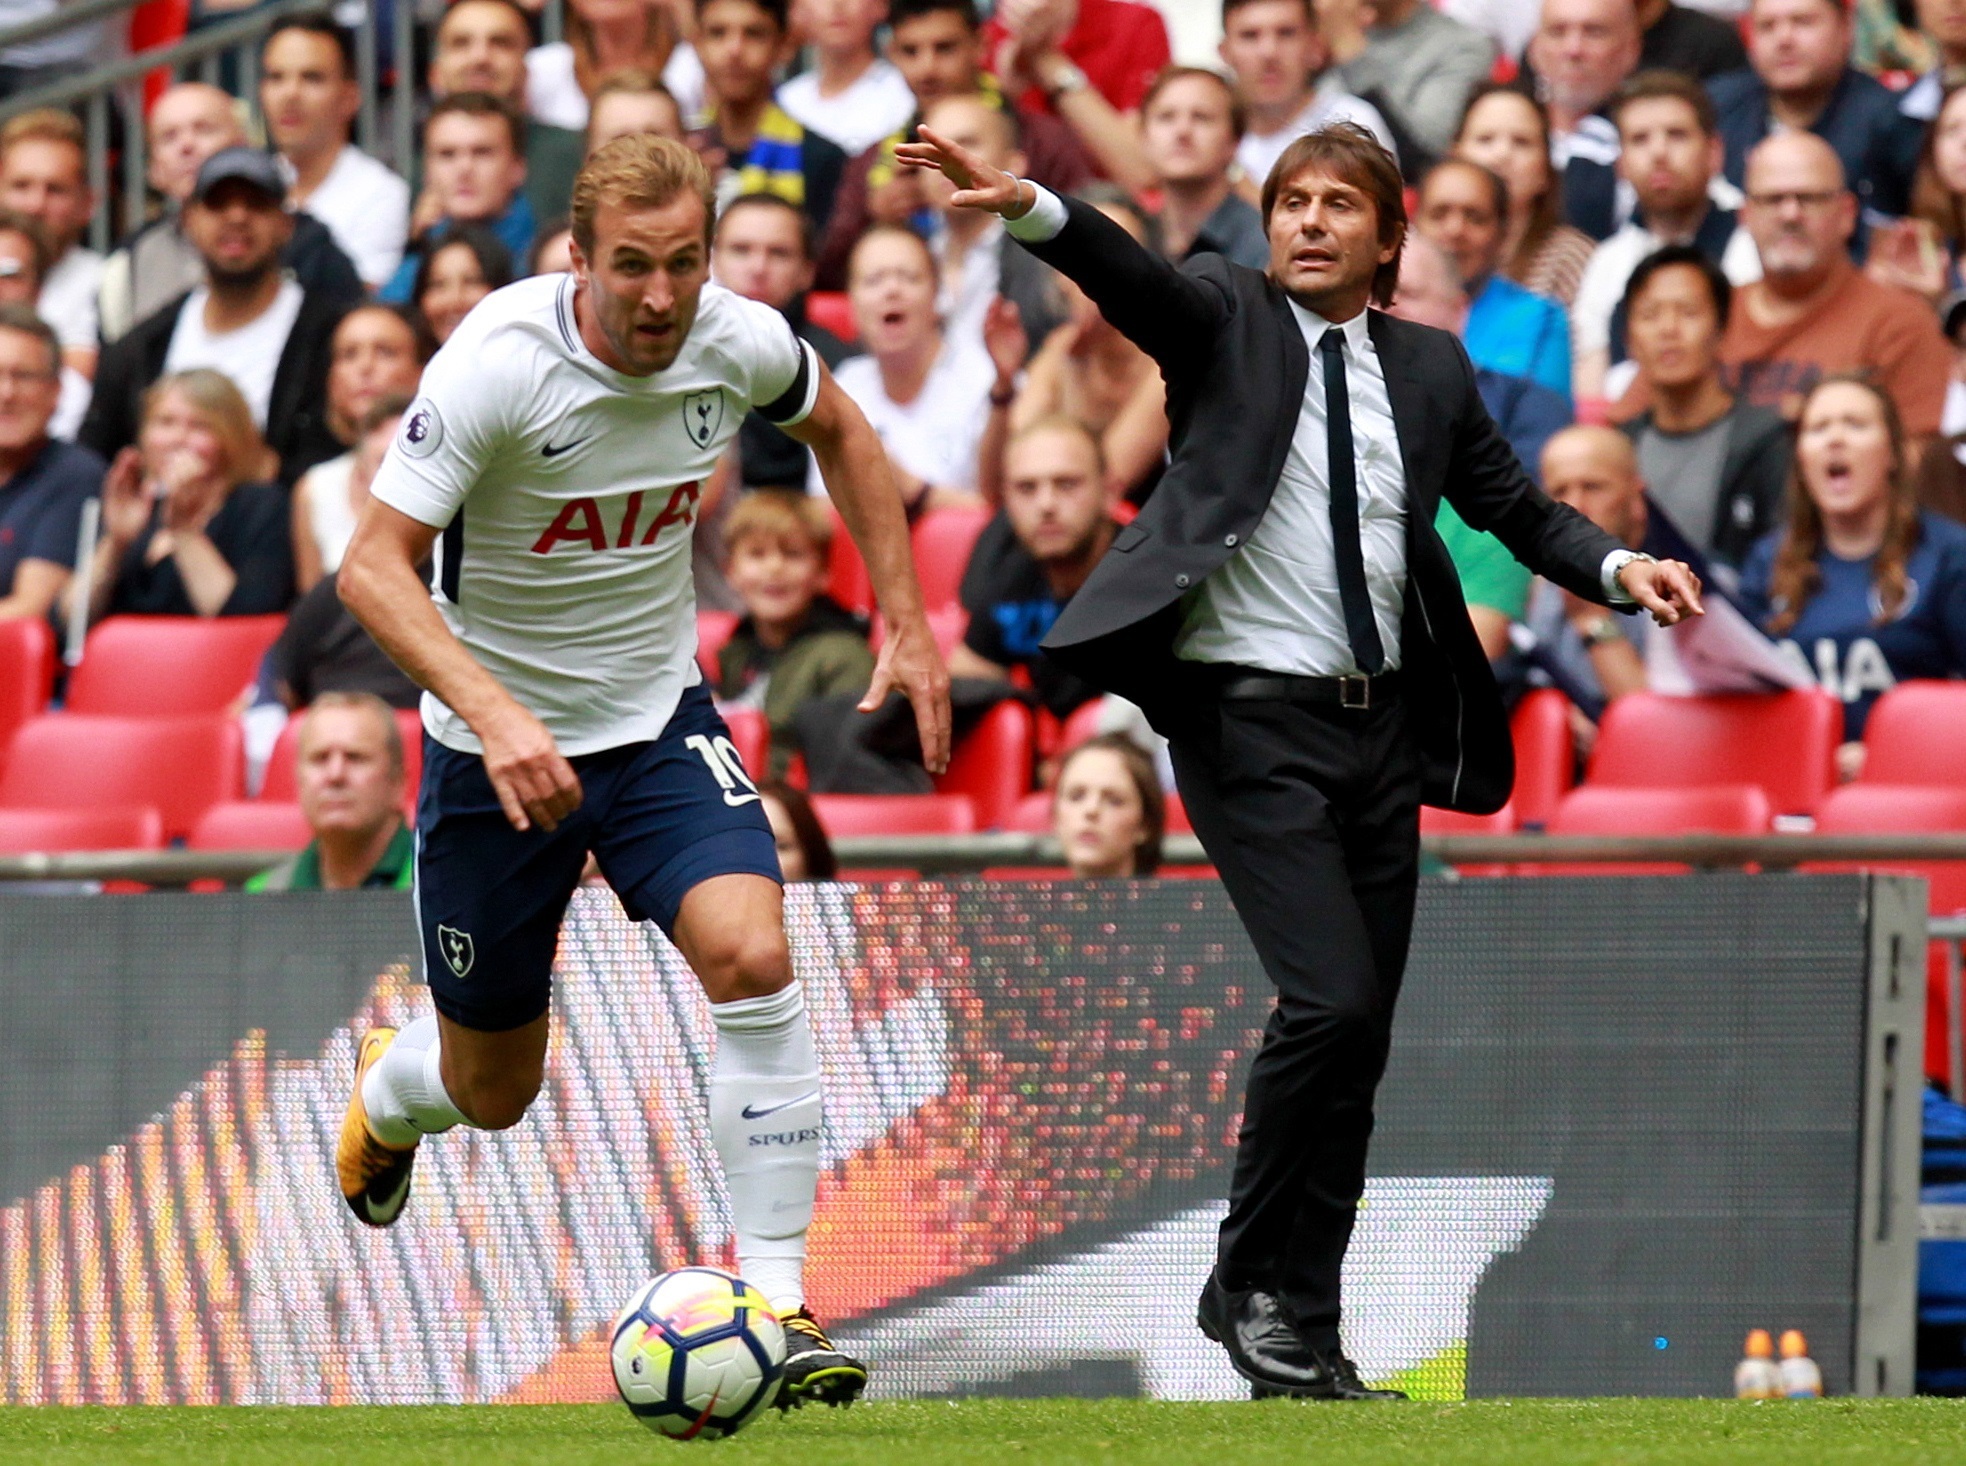 En la foto, tomada en 2017, aparece Harry Kane del Tottenham y al fondo Antonio Conte cuando dirigía al Chelsea a quien hizo campeón. Foto Prensa Libre: EFE.